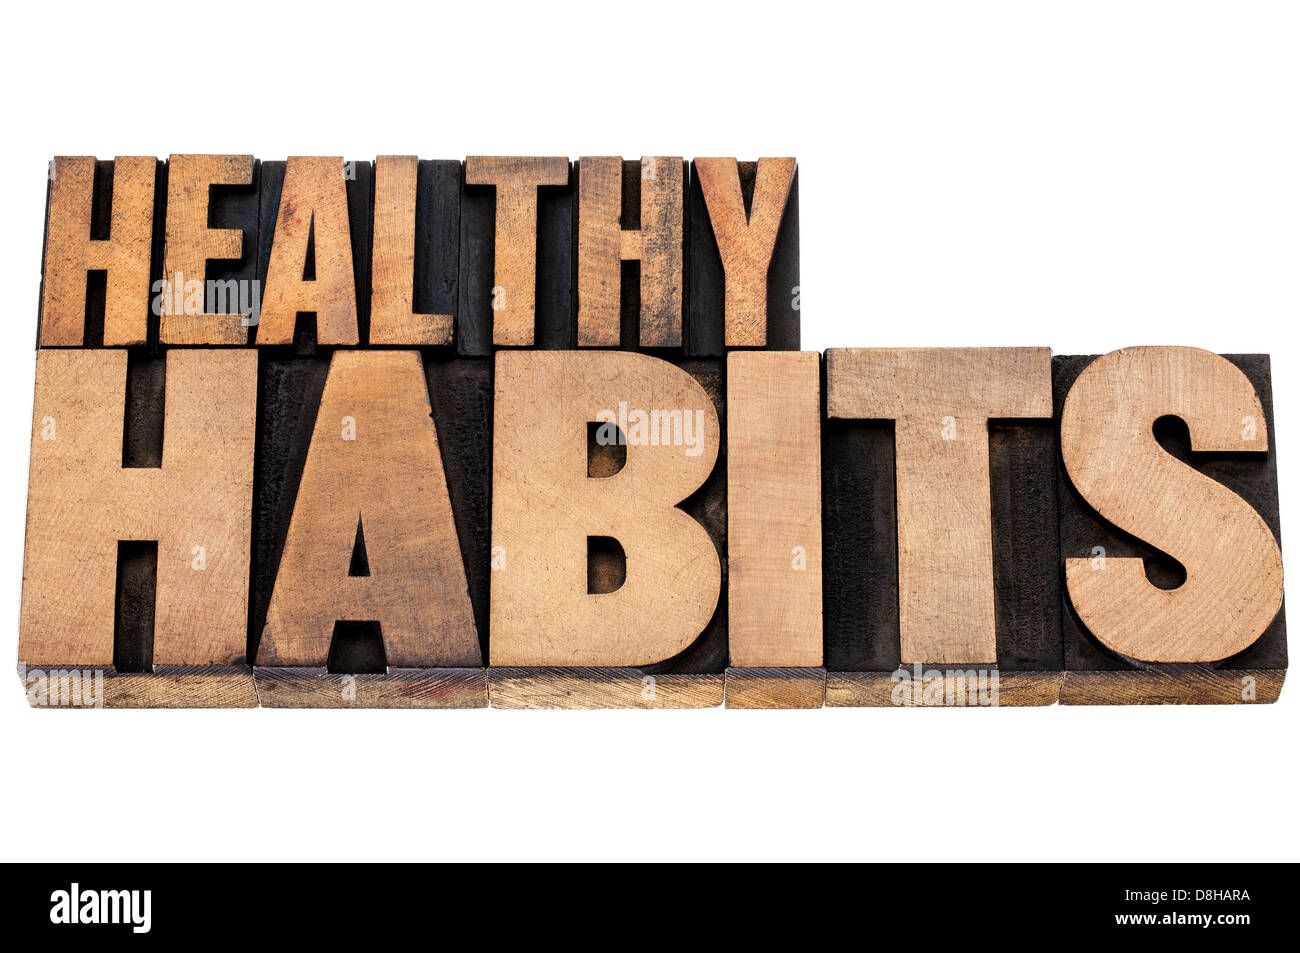 Le sane abitudini - concetto di benessere - testo isolato in rilievografia vintage tipo legno Foto Stock